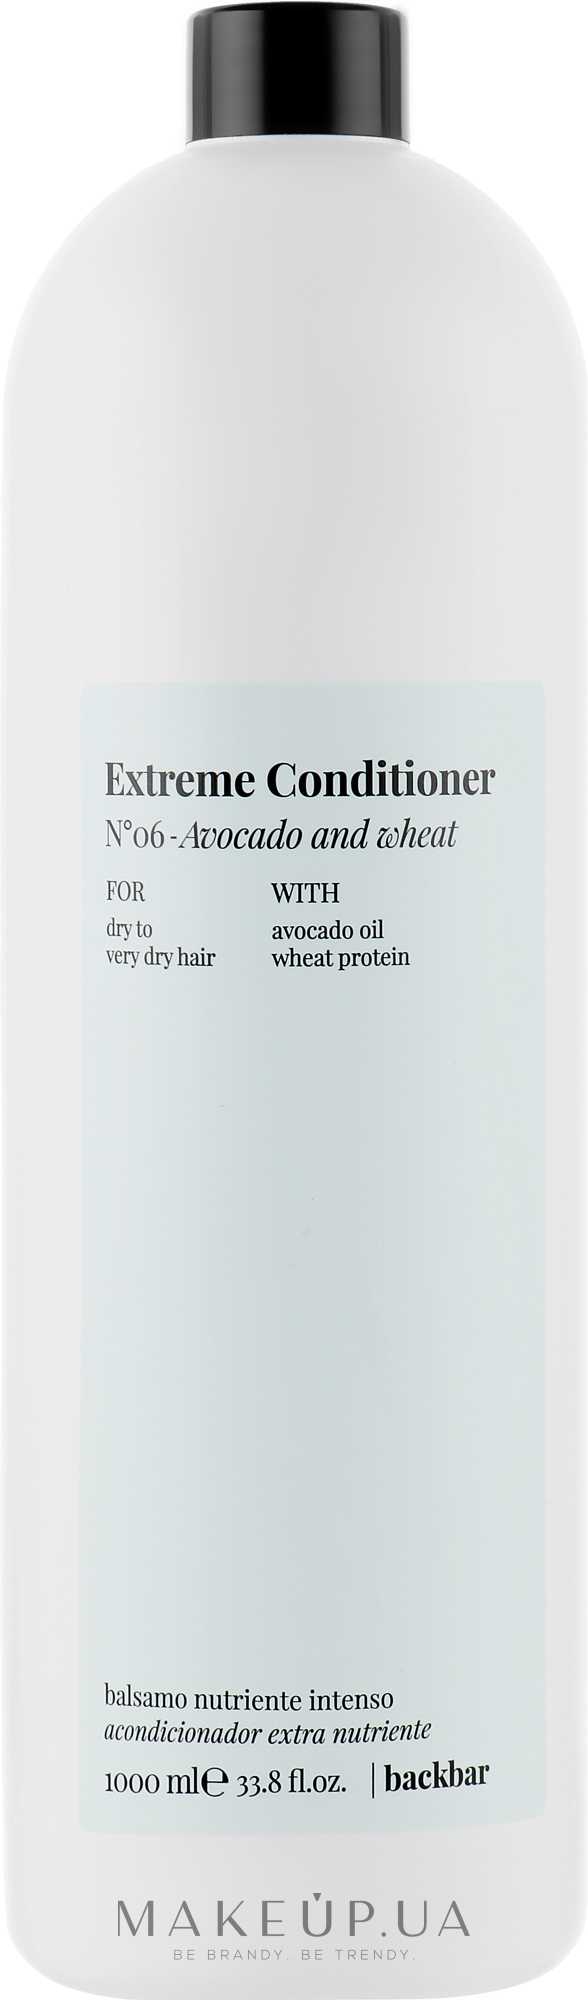 Зволожувальний кондиціонер для волосся з олією авокадо й пшениці - FarmaVita Back Bar Extreme Conditioner — фото 1000ml